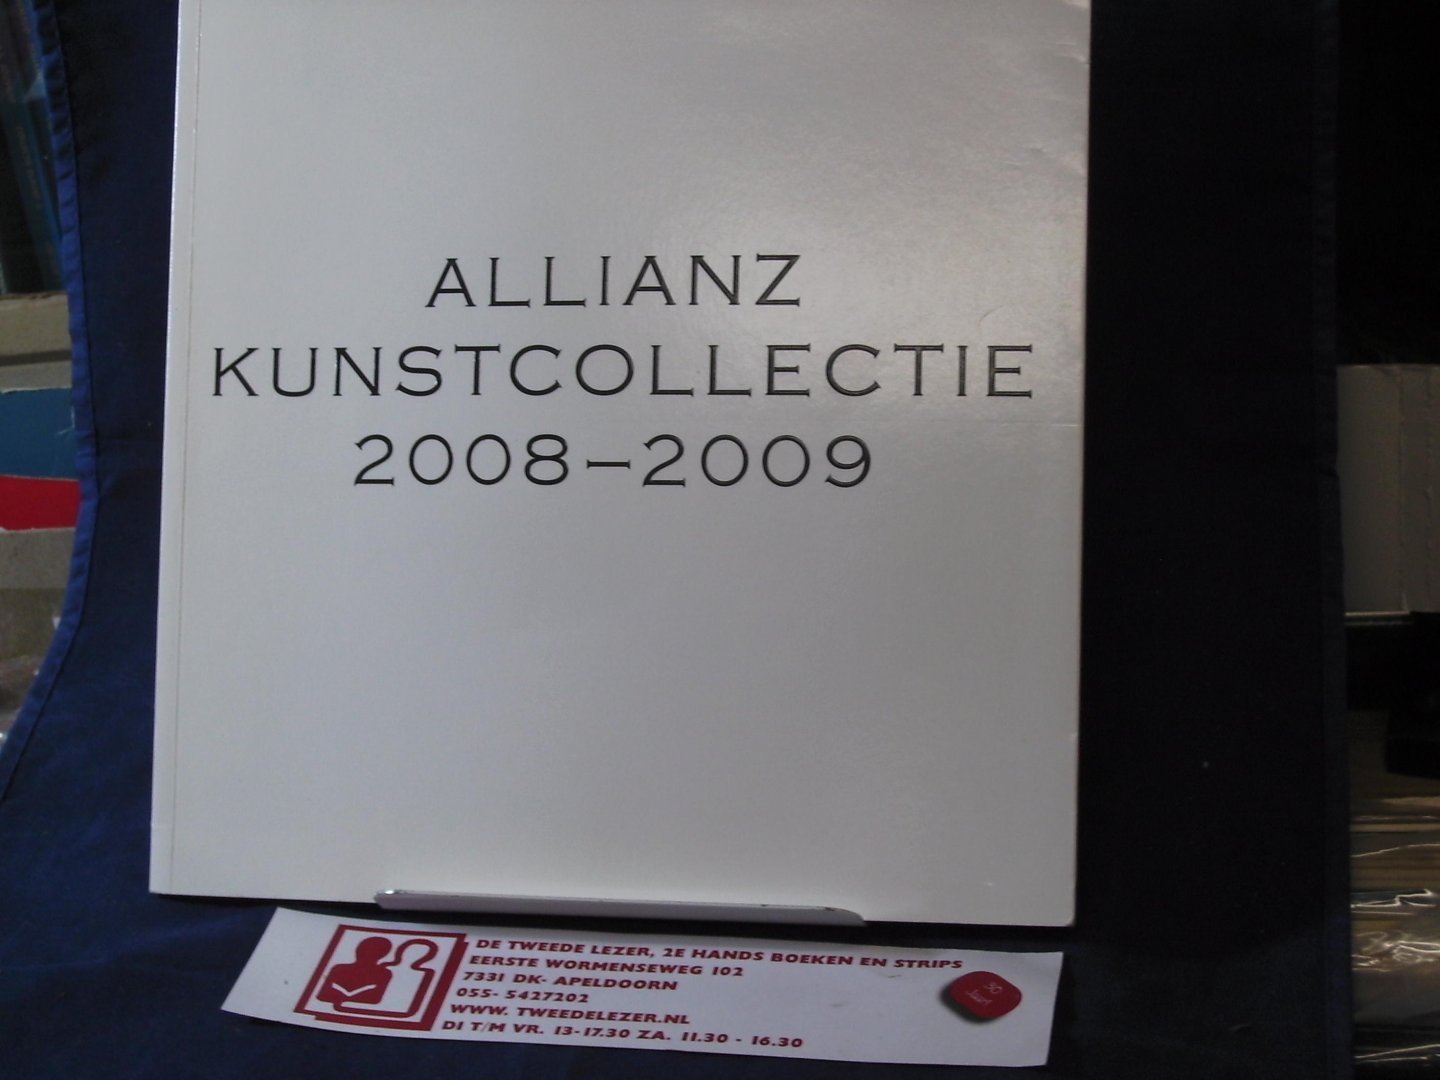 Mieghem, paul van, Brink Kunstzaken, Nieuwerbrug aan de Rijn - Allianz Nederland Kunstcollectie 2008 - 2009